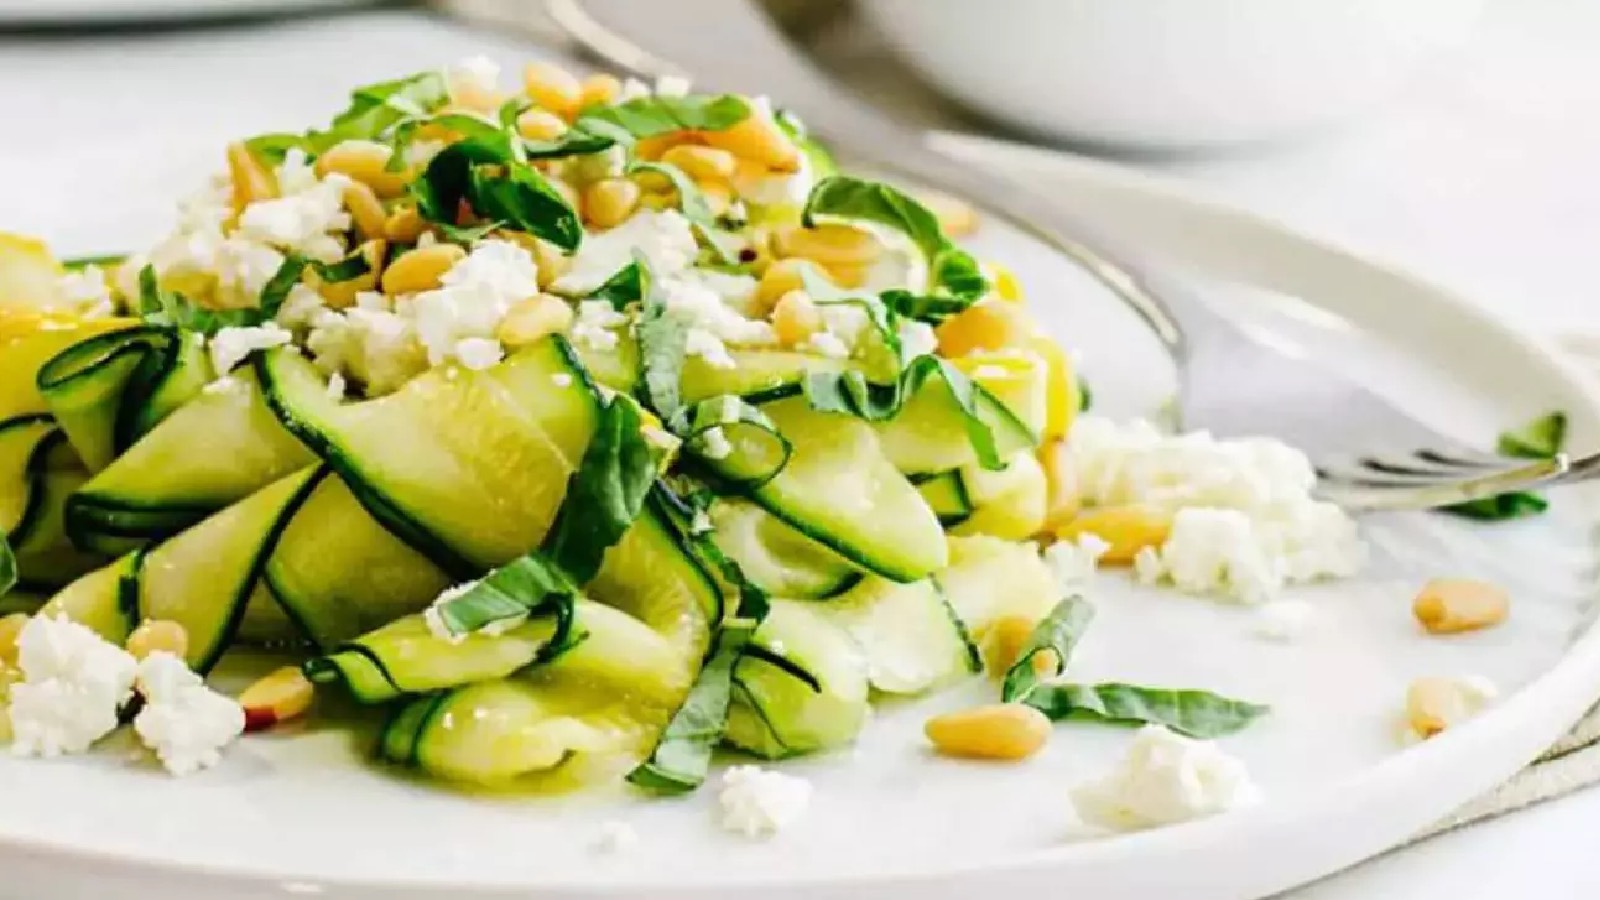 Hem pratik hem lezzetli hem de doyurucu bir yemek arıyorsanız, yer fıstıklı kabak salatası tam size göre!